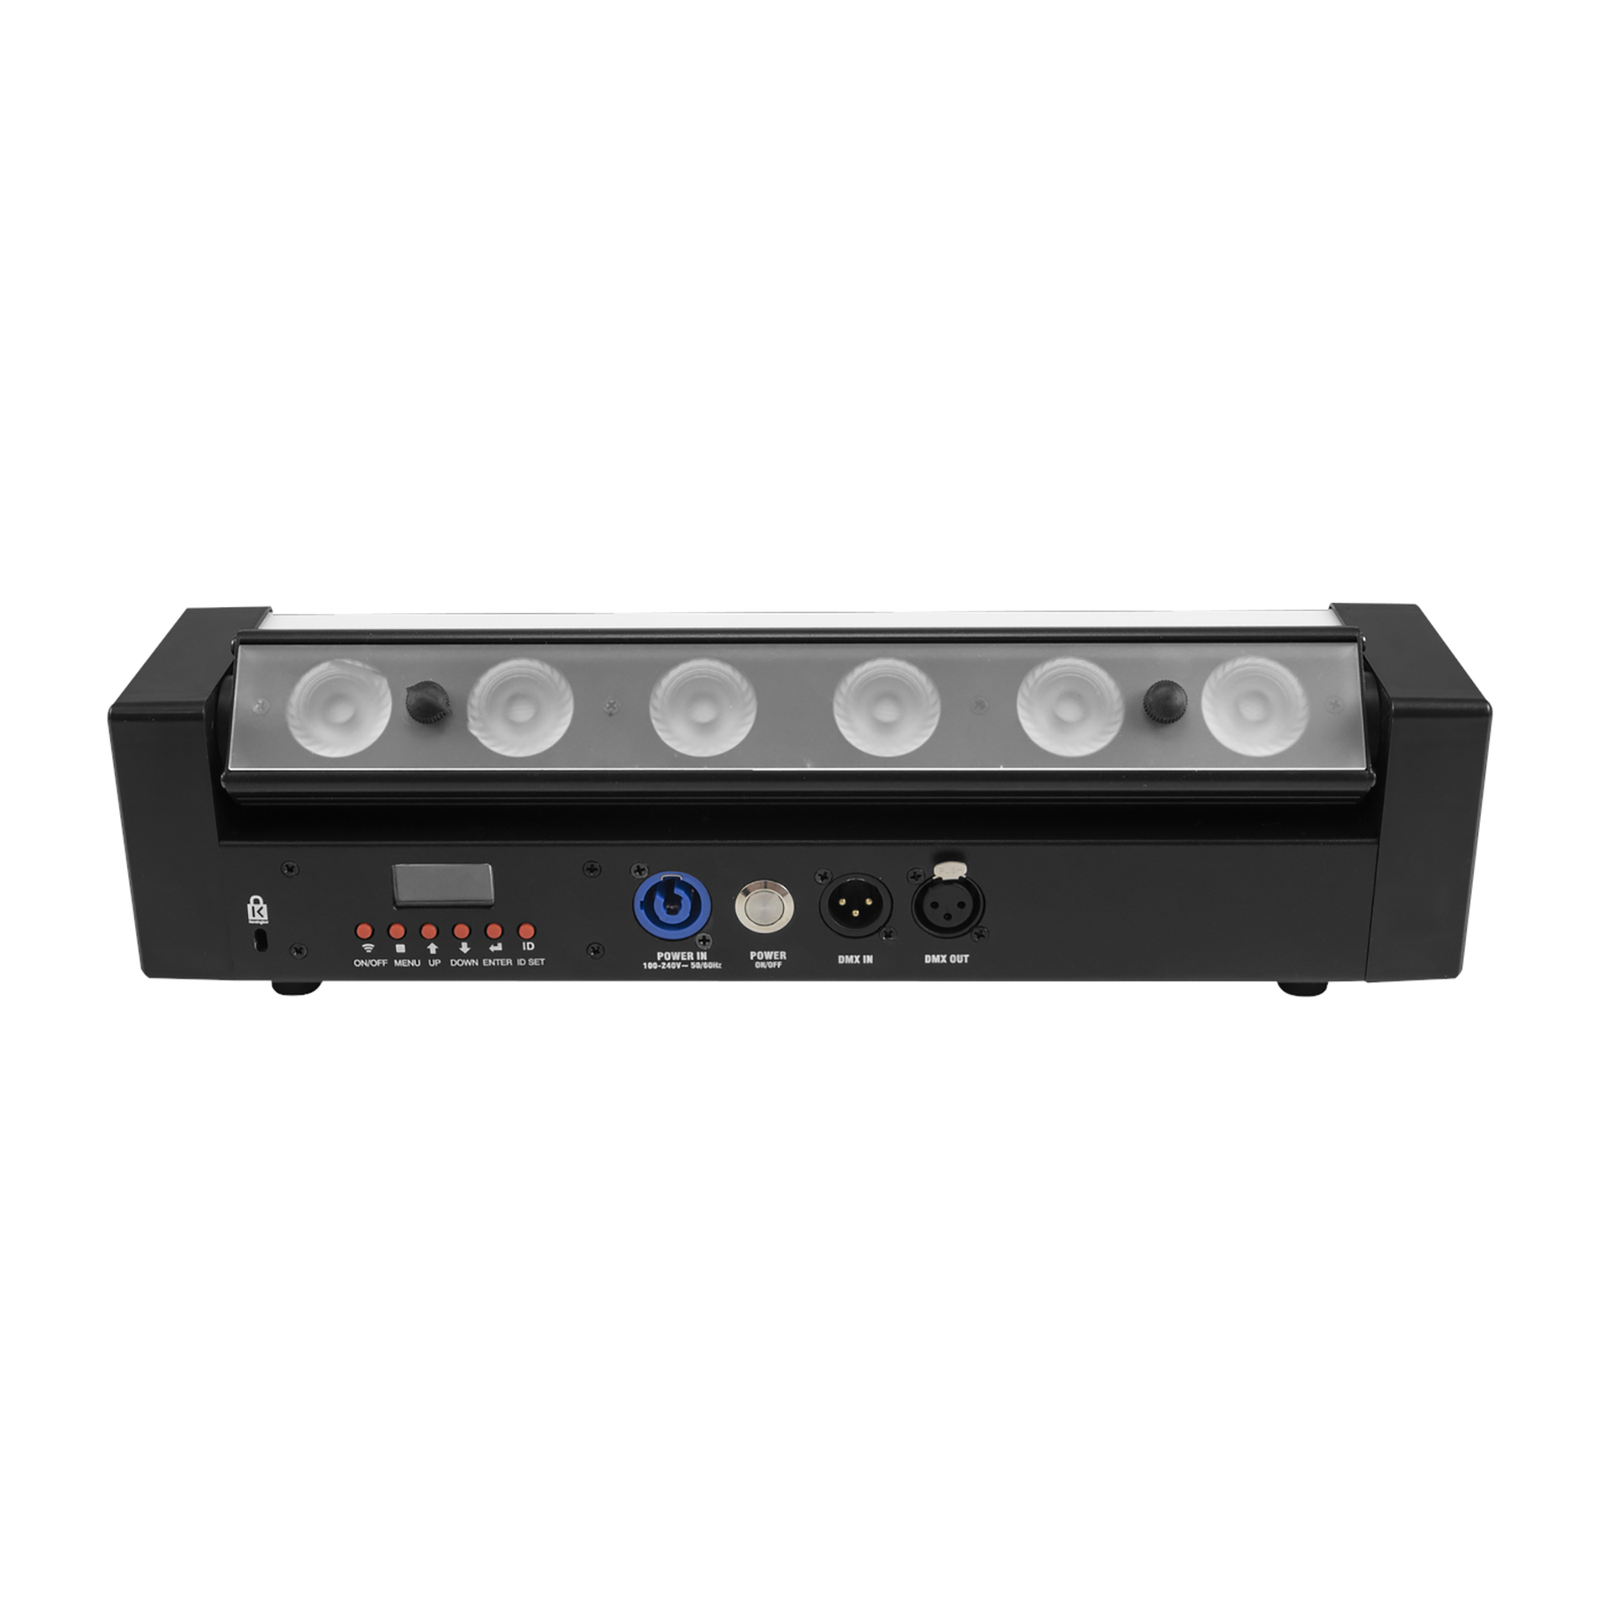 EUROLITE Battery Bar-6 Glow LED bar RGBW remote control